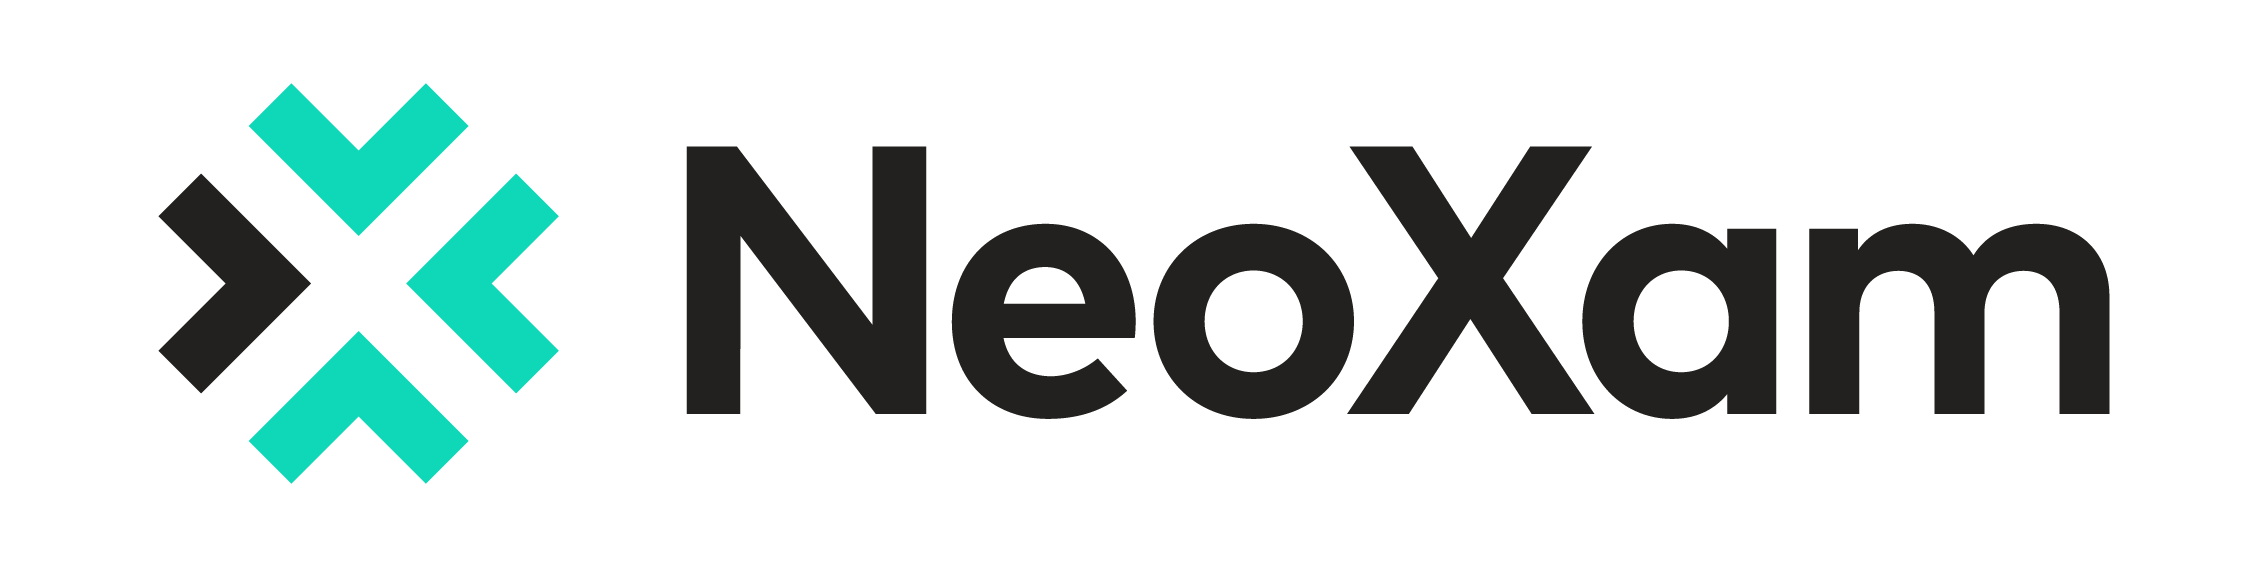 logo-neoxam7